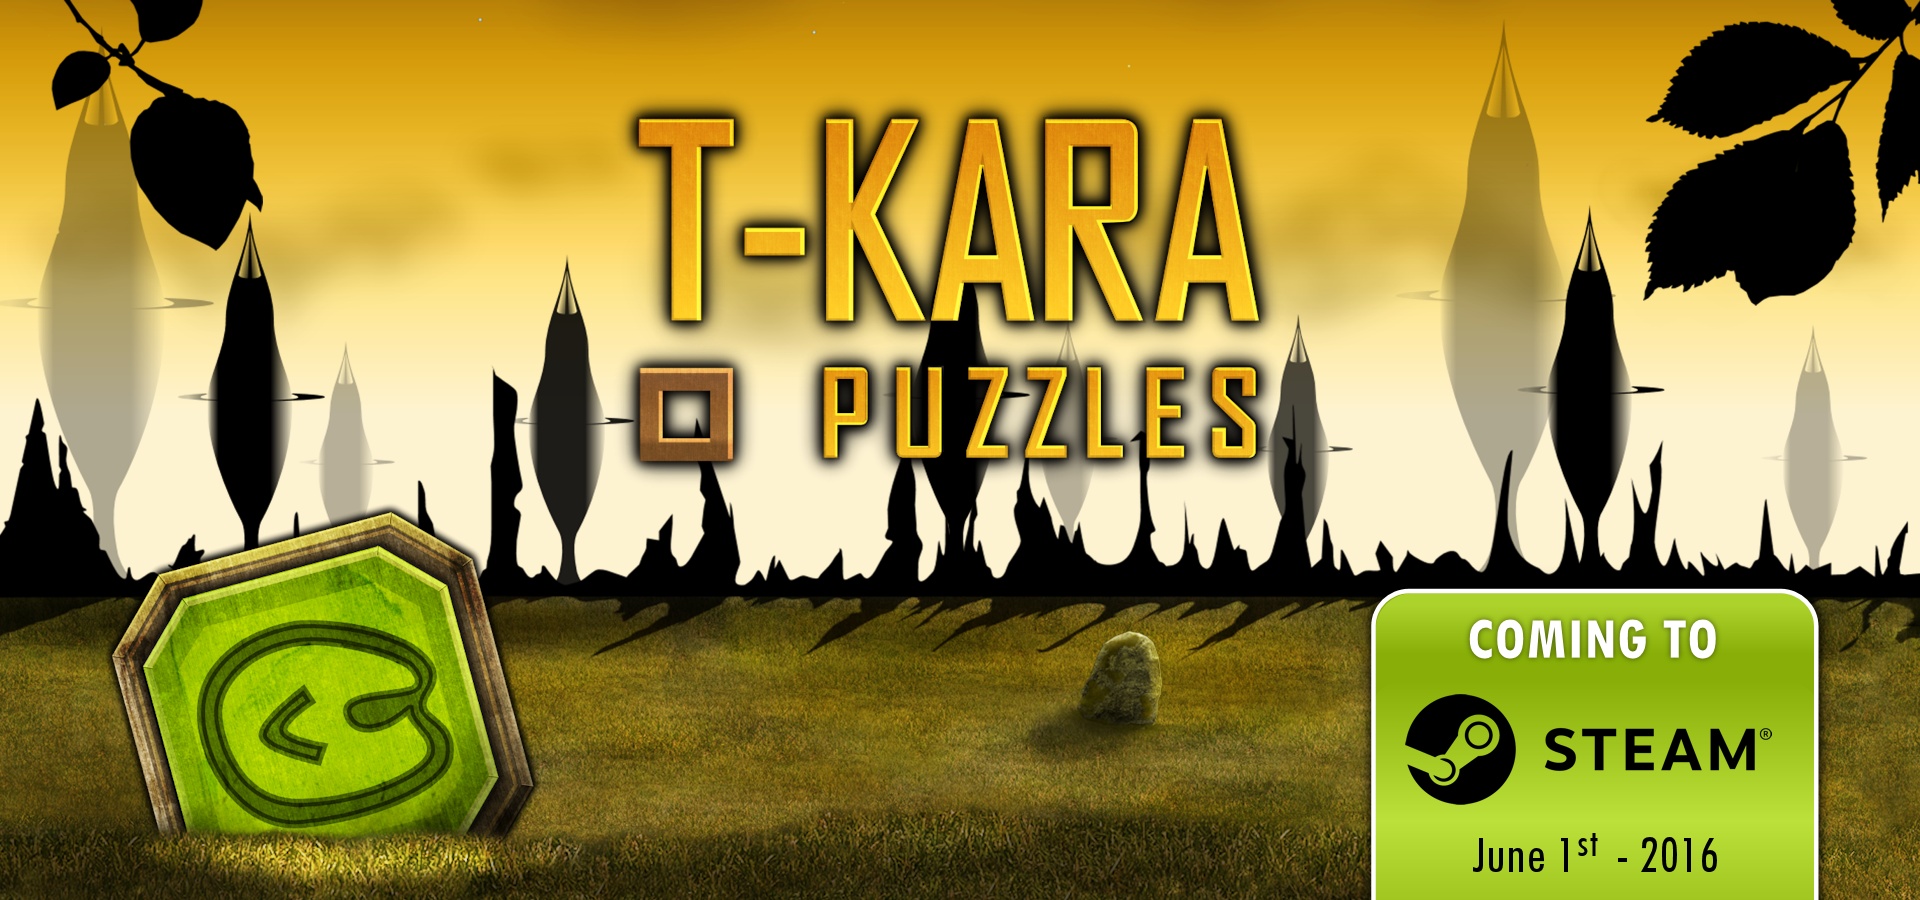 /u/1/press/assets_tkara/t-kara-puzzles-comingsoon-steam_1920x900